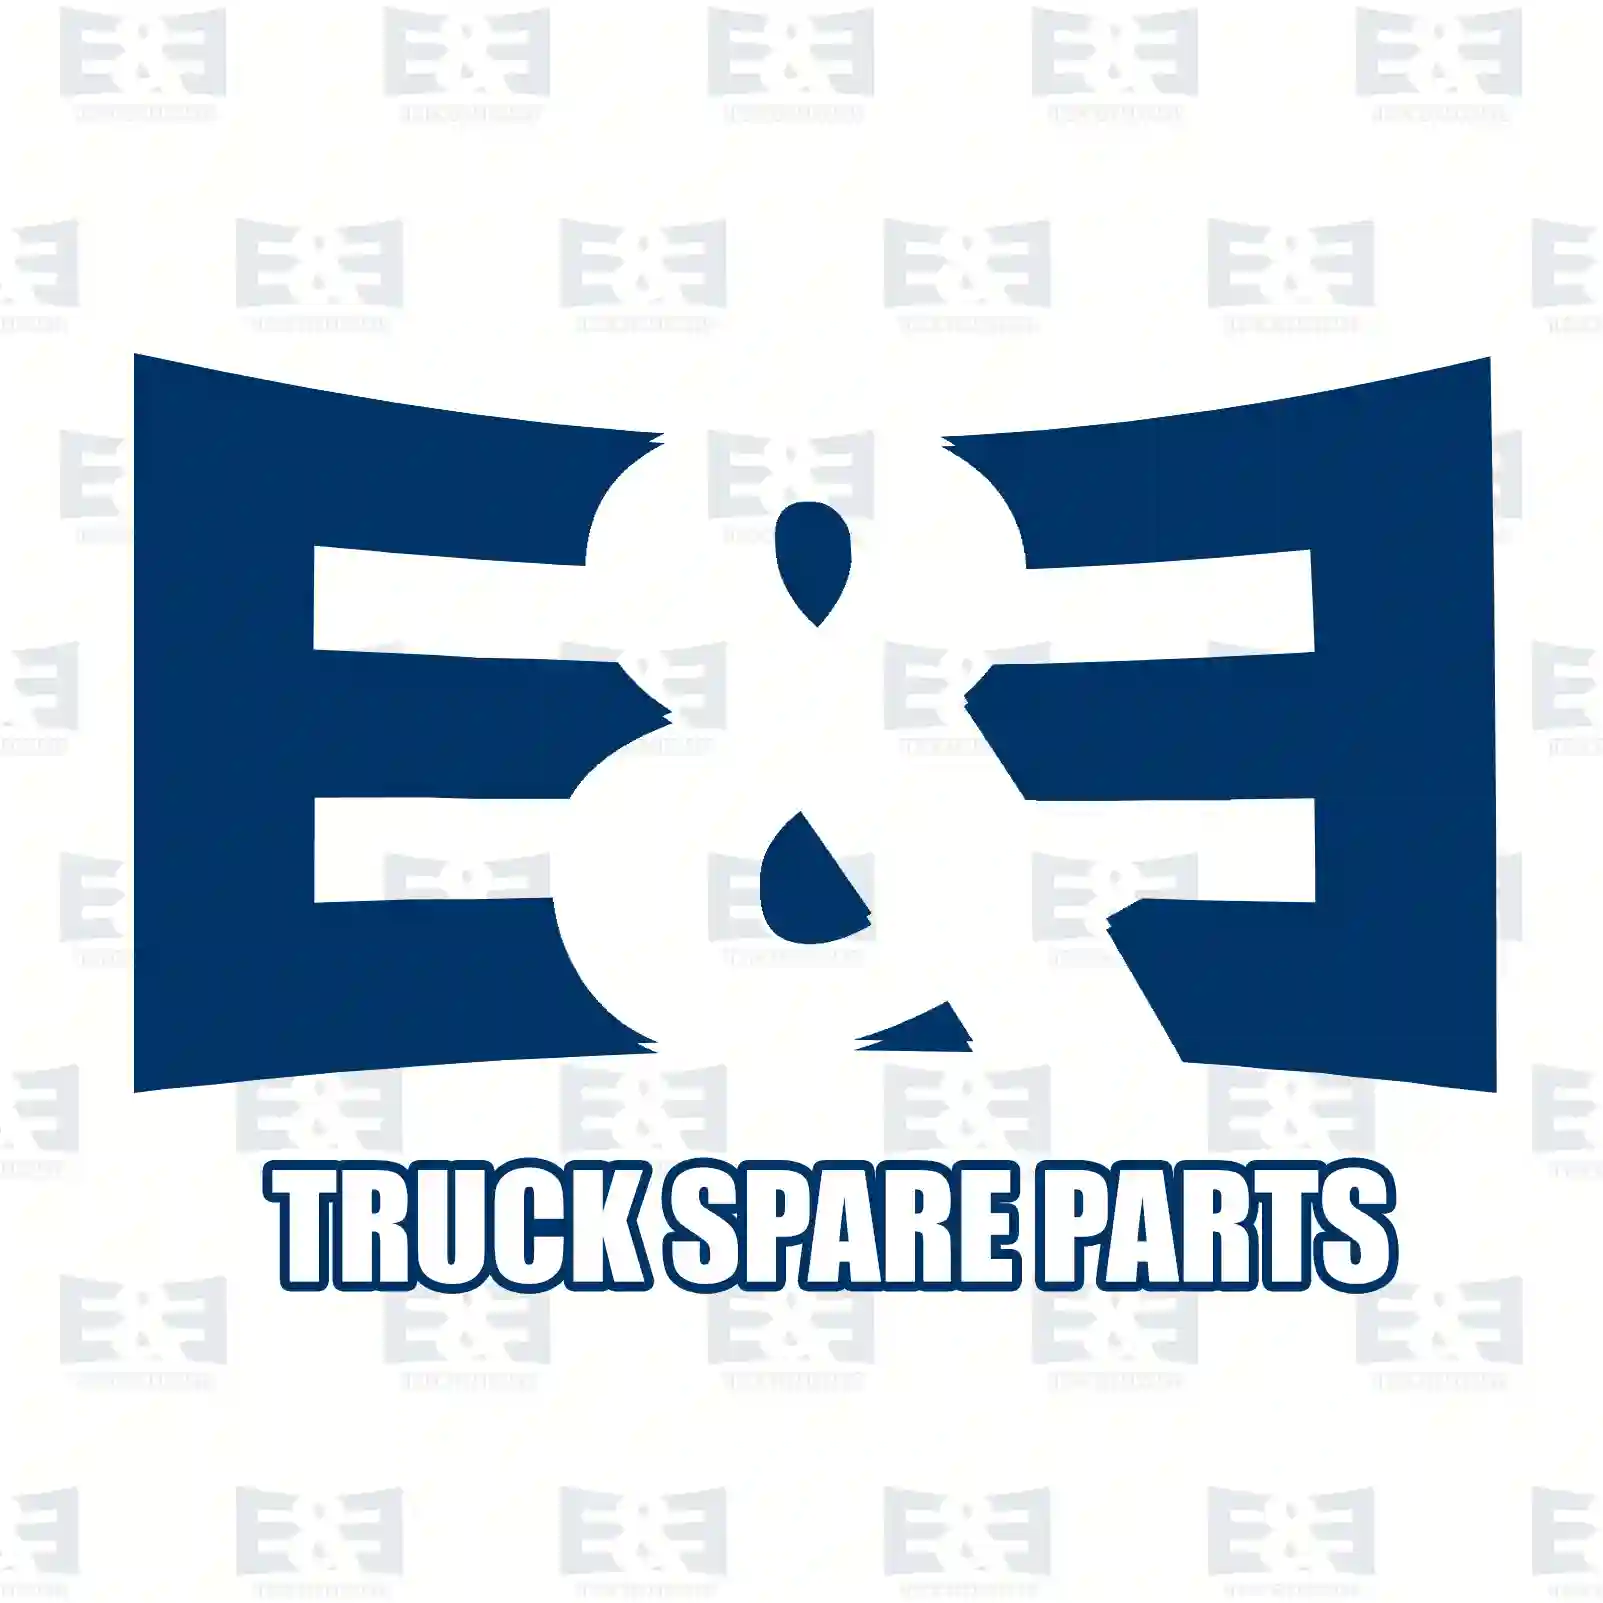 Brake disc, 2E2296269, 504267884, , , , , , , , ||  2E2296269 E&E Truck Spare Parts | Truck Spare Parts, Auotomotive Spare Parts Brake disc, 2E2296269, 504267884, , , , , , , , ||  2E2296269 E&E Truck Spare Parts | Truck Spare Parts, Auotomotive Spare Parts